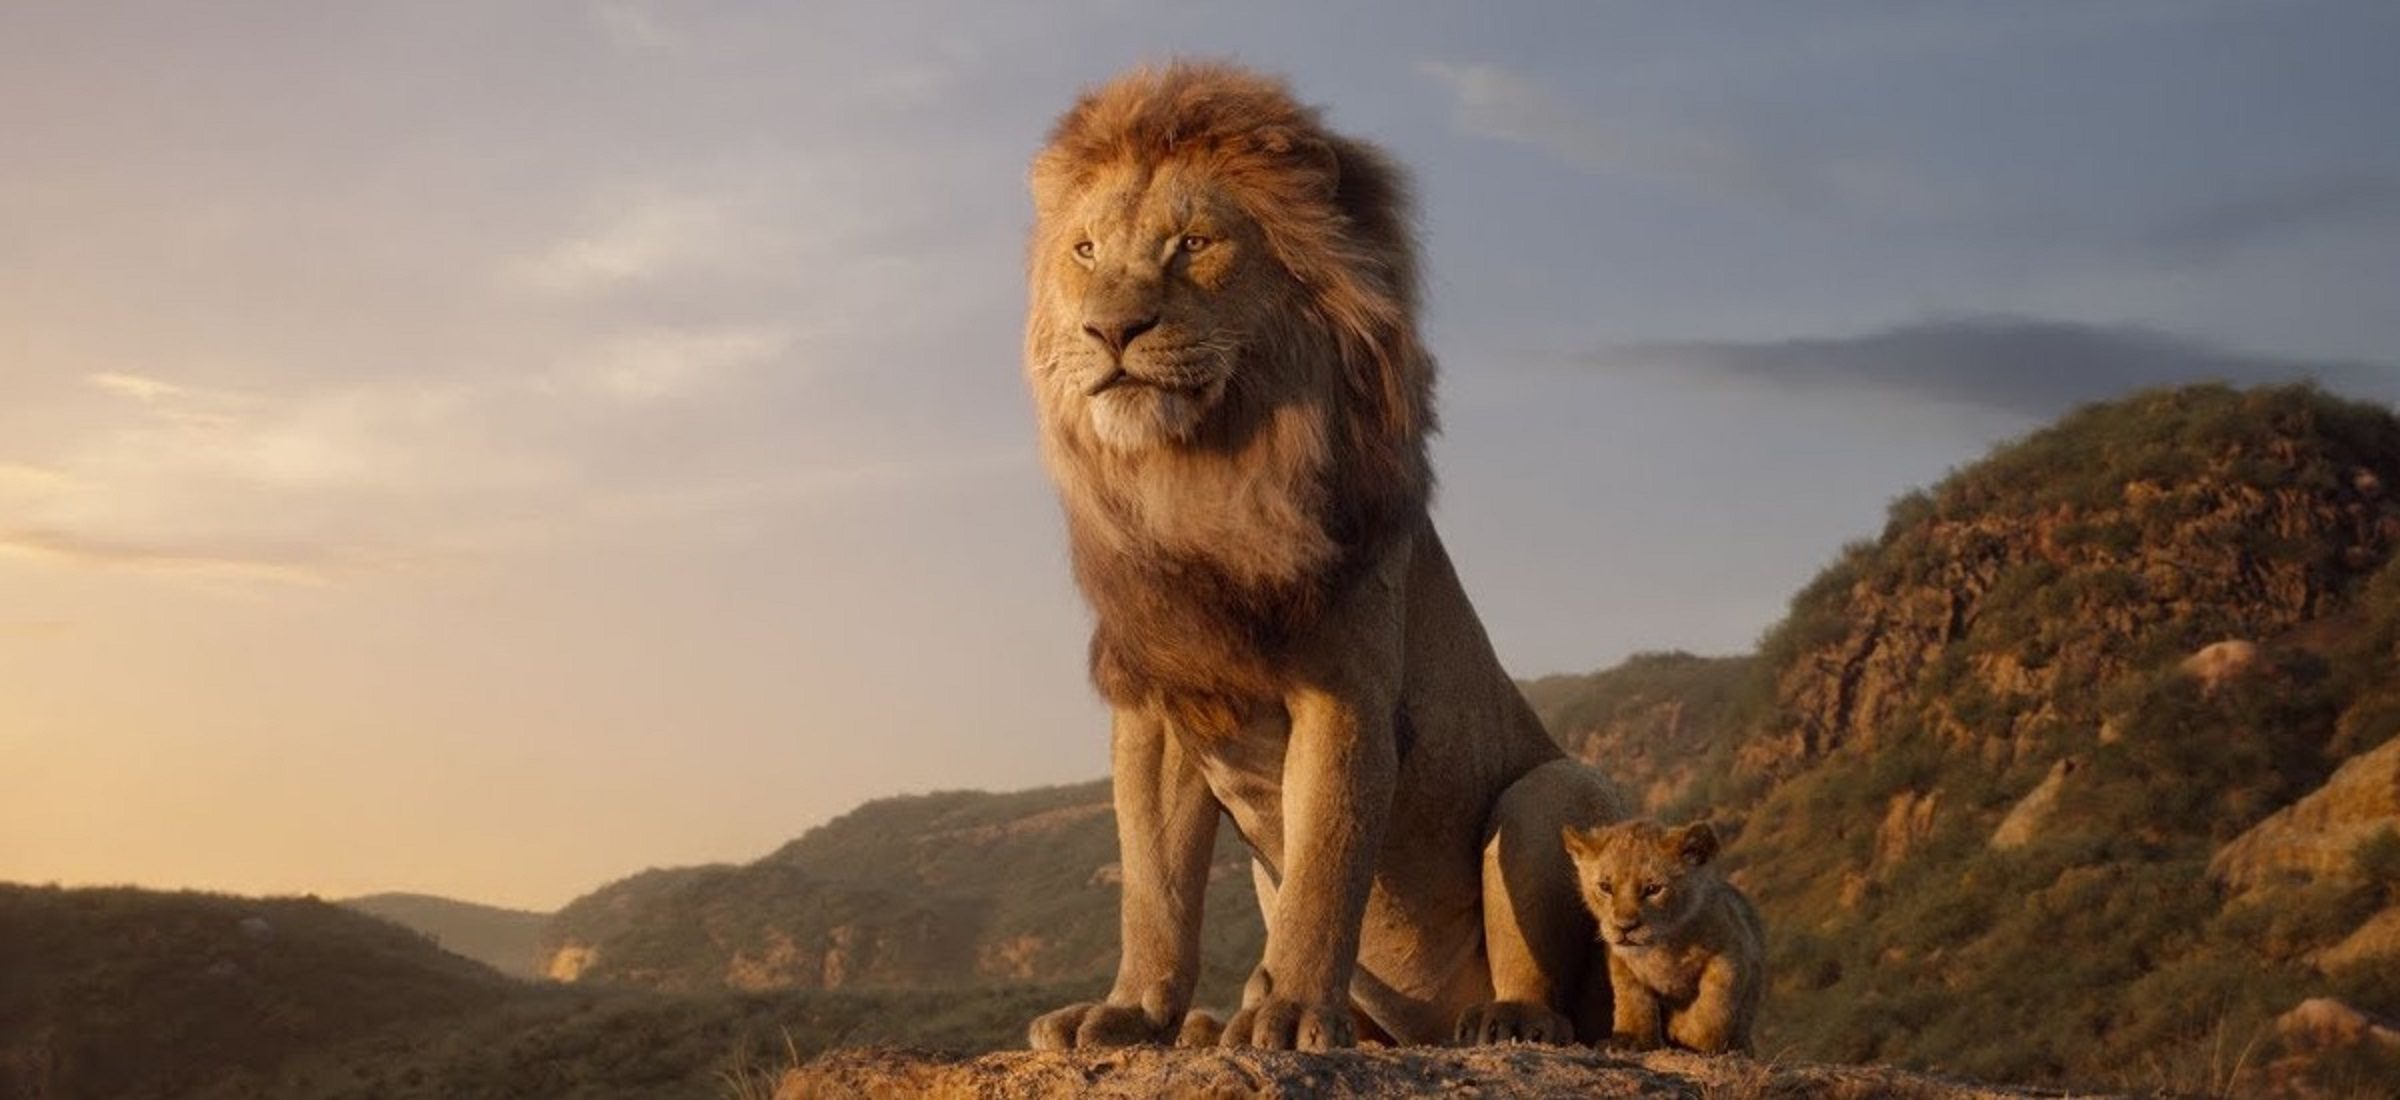 Das Remake des Films "Der König der Löwen" wird das Original-Prequel erhalten. Die Produktion von Barry Jenkins erzählt die Geschichte von Mufasas Vergangenheit 10